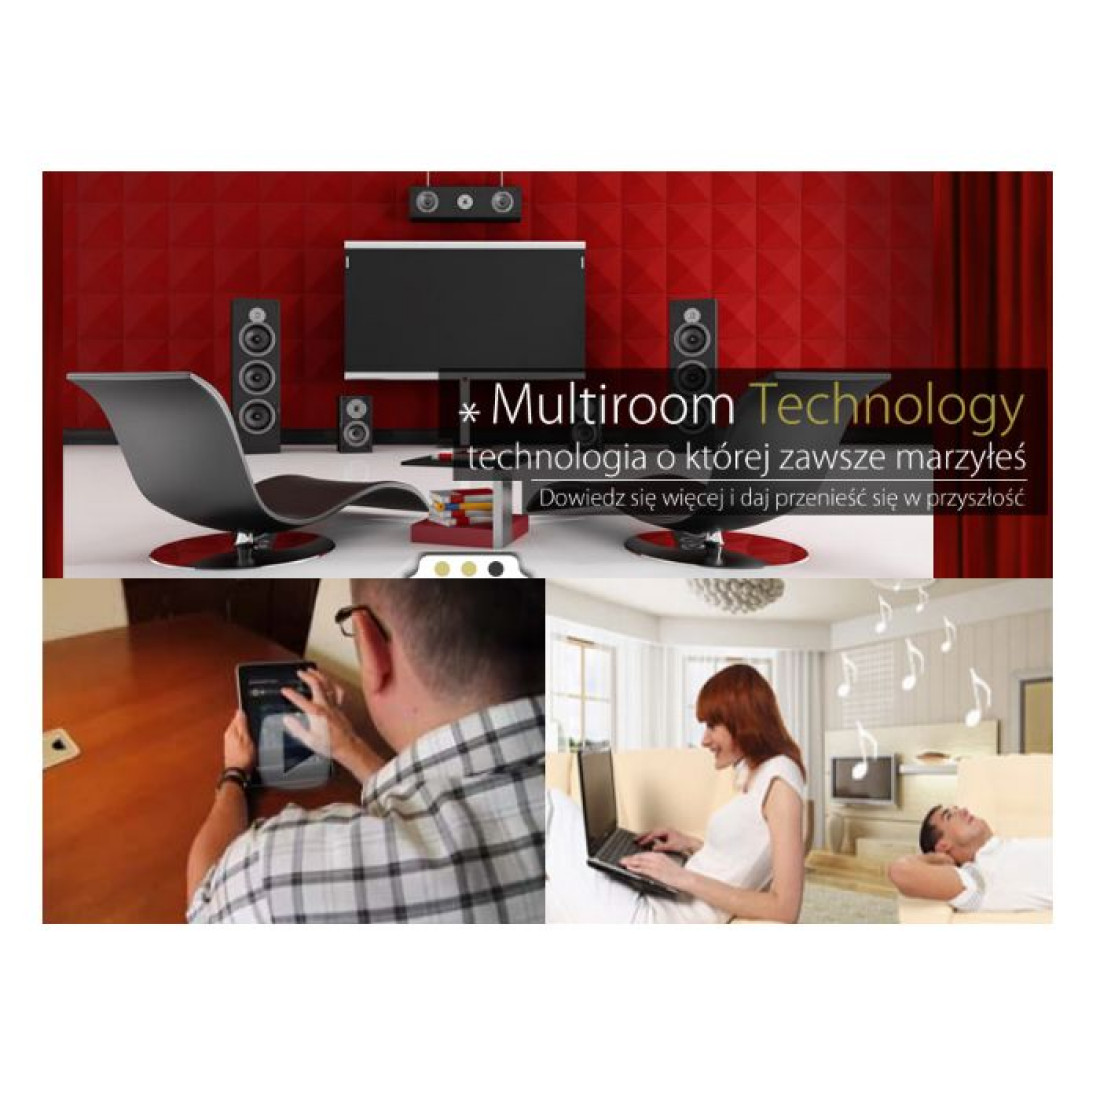 Multiroom Technology - technologię o której zawsze marzyłeś oferuje firma IRA